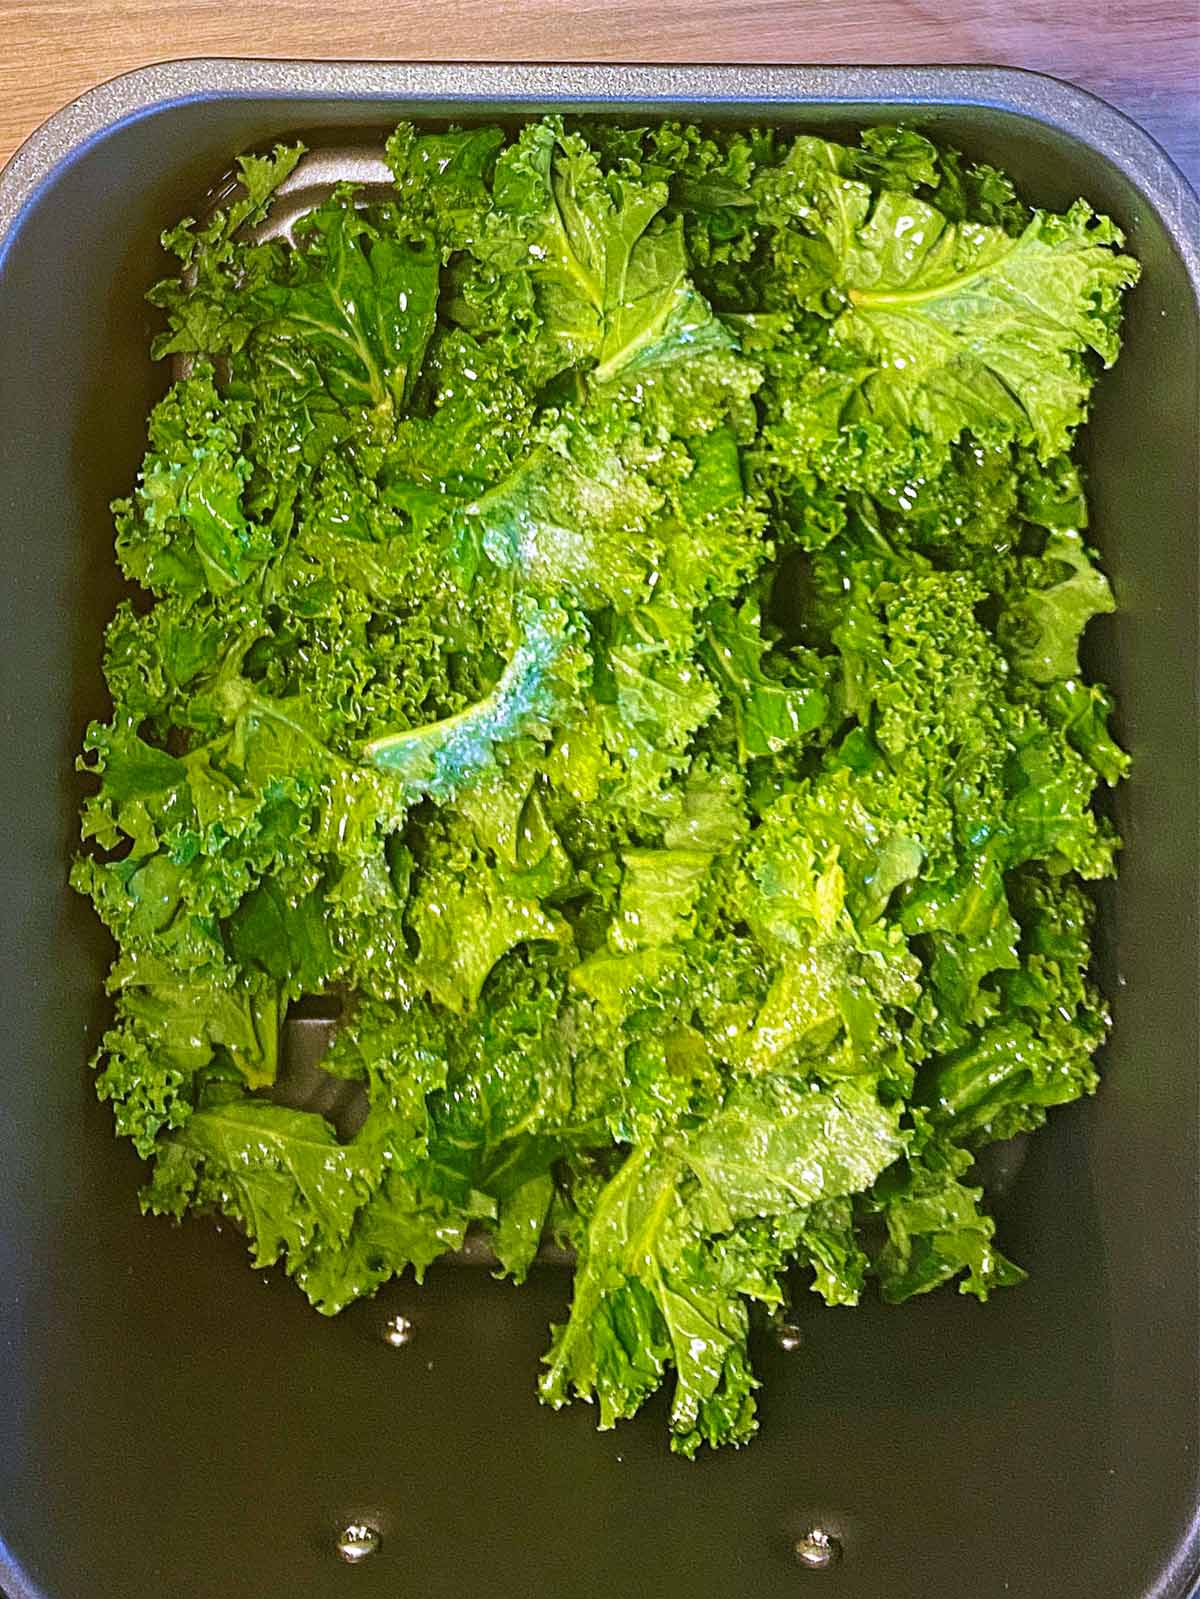 An air fryer basket full of kale leaves.